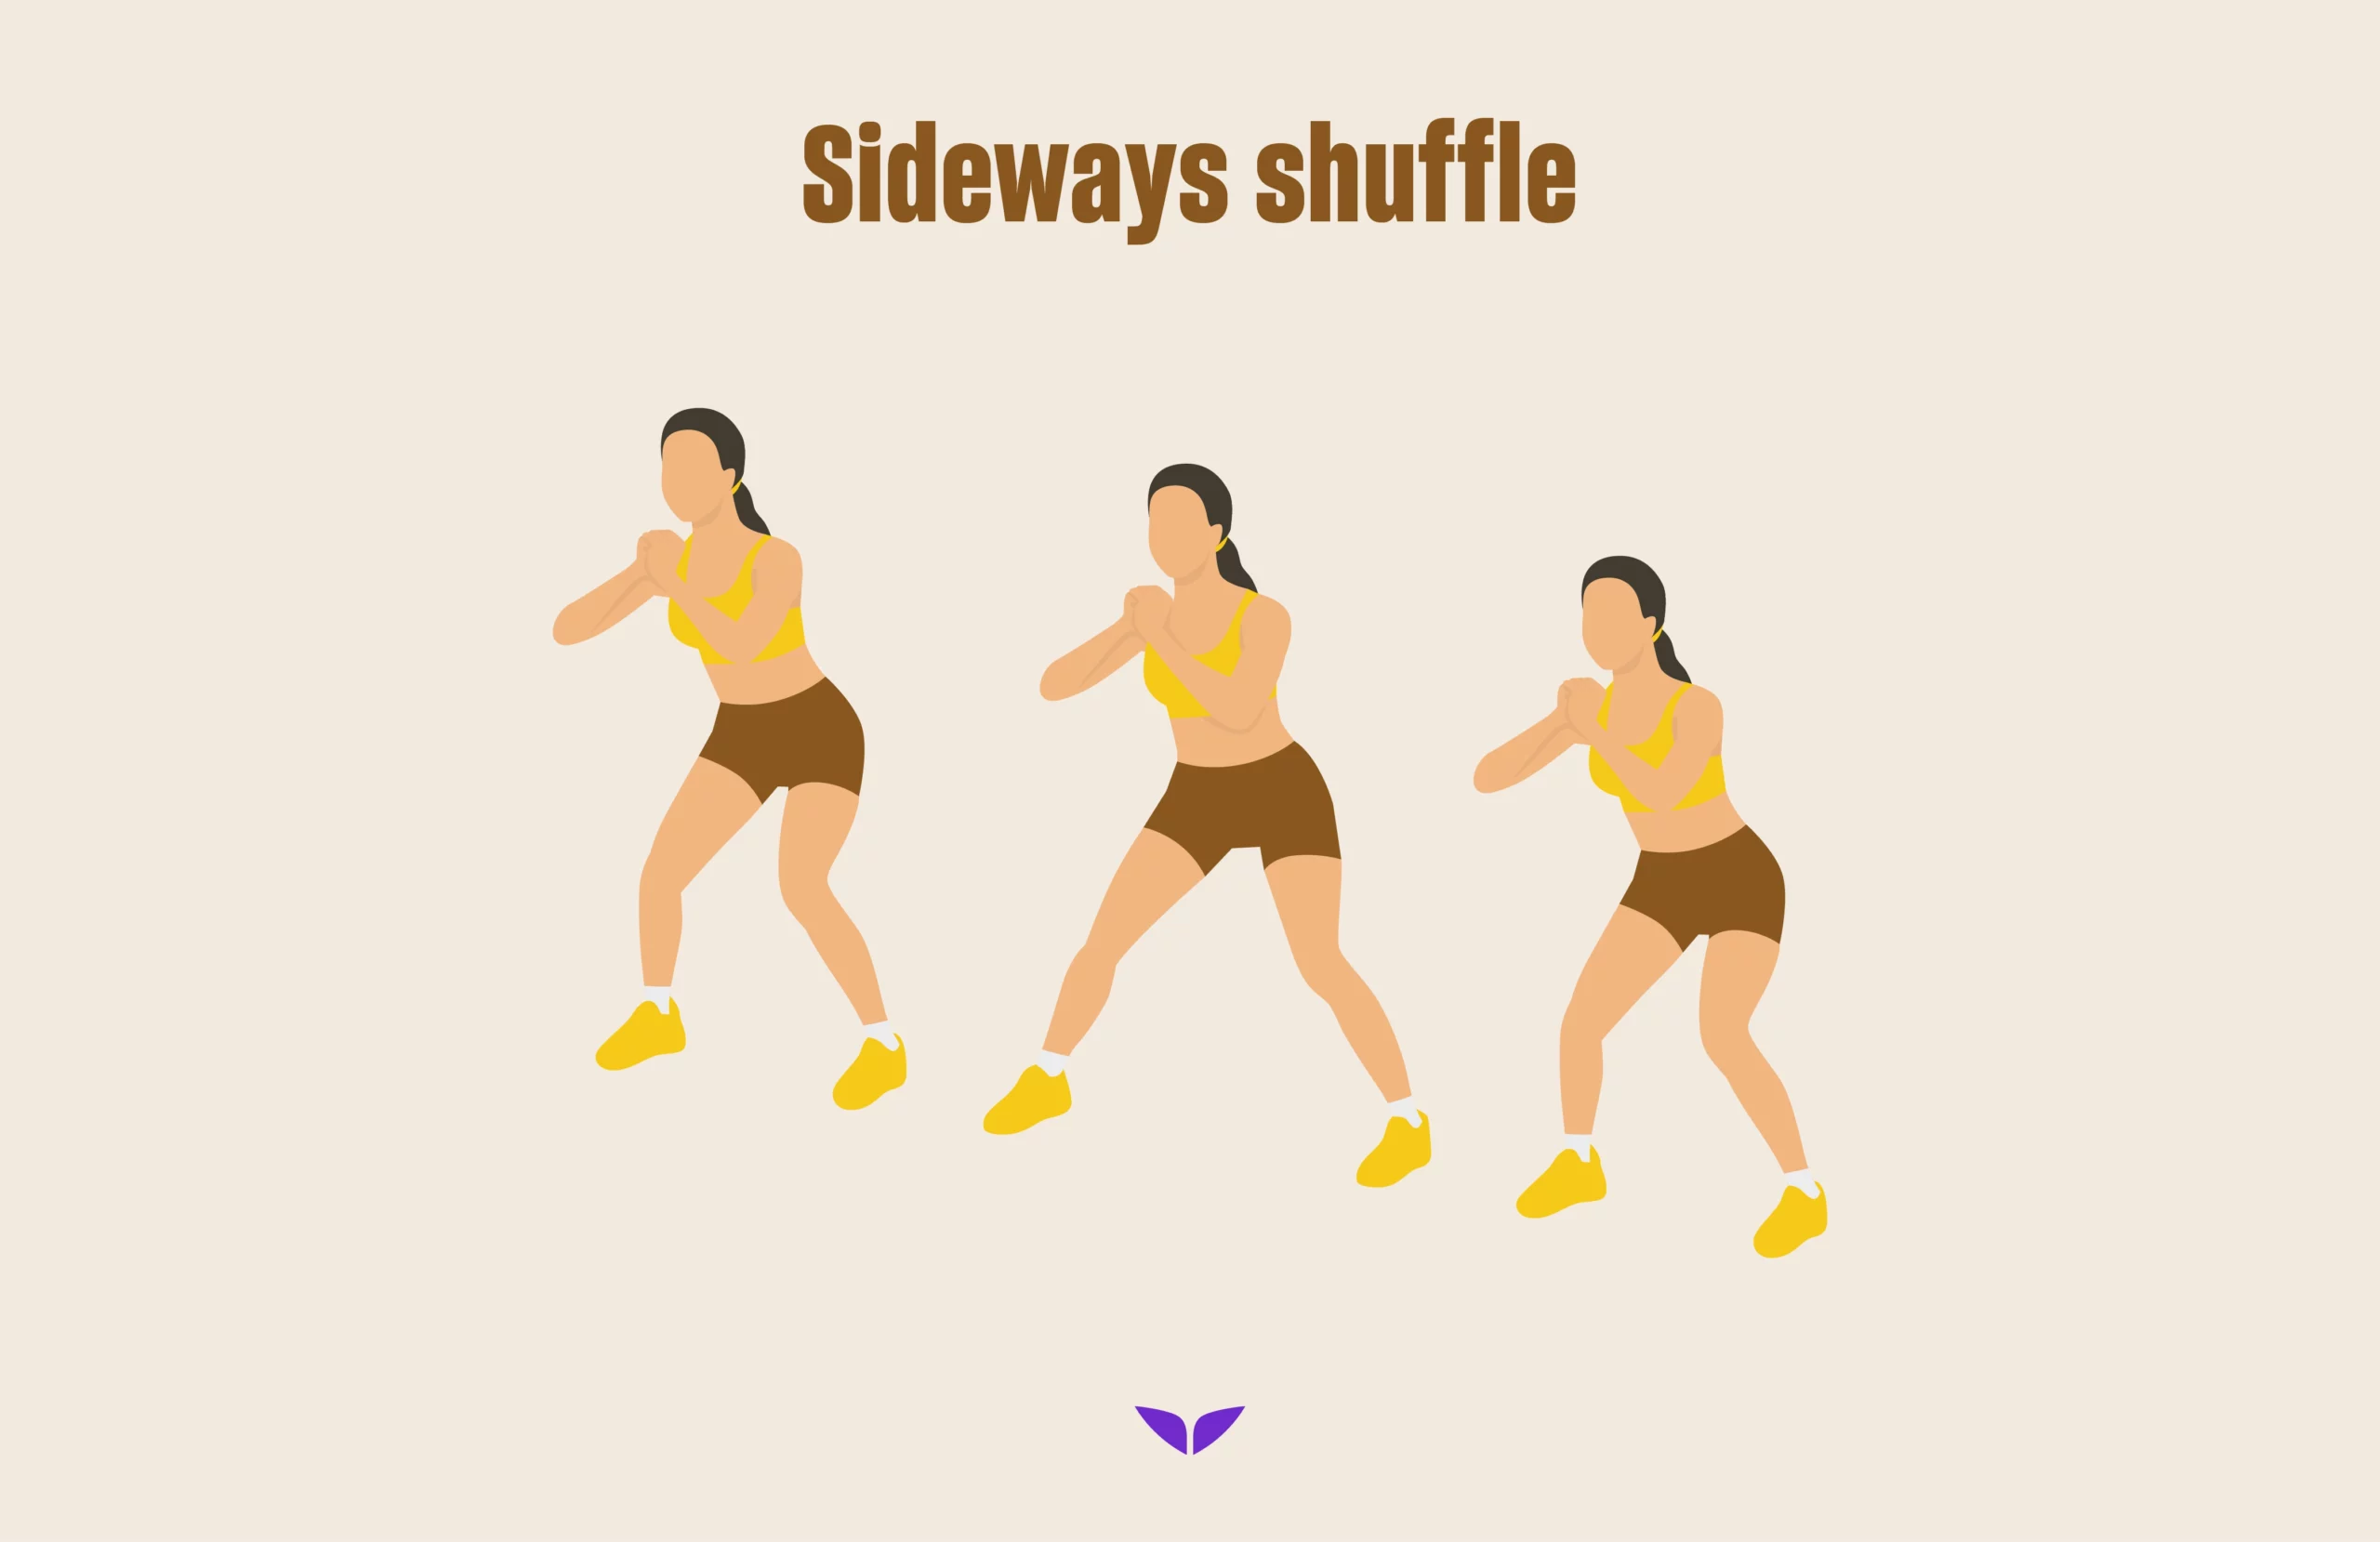 Sideways shuffle